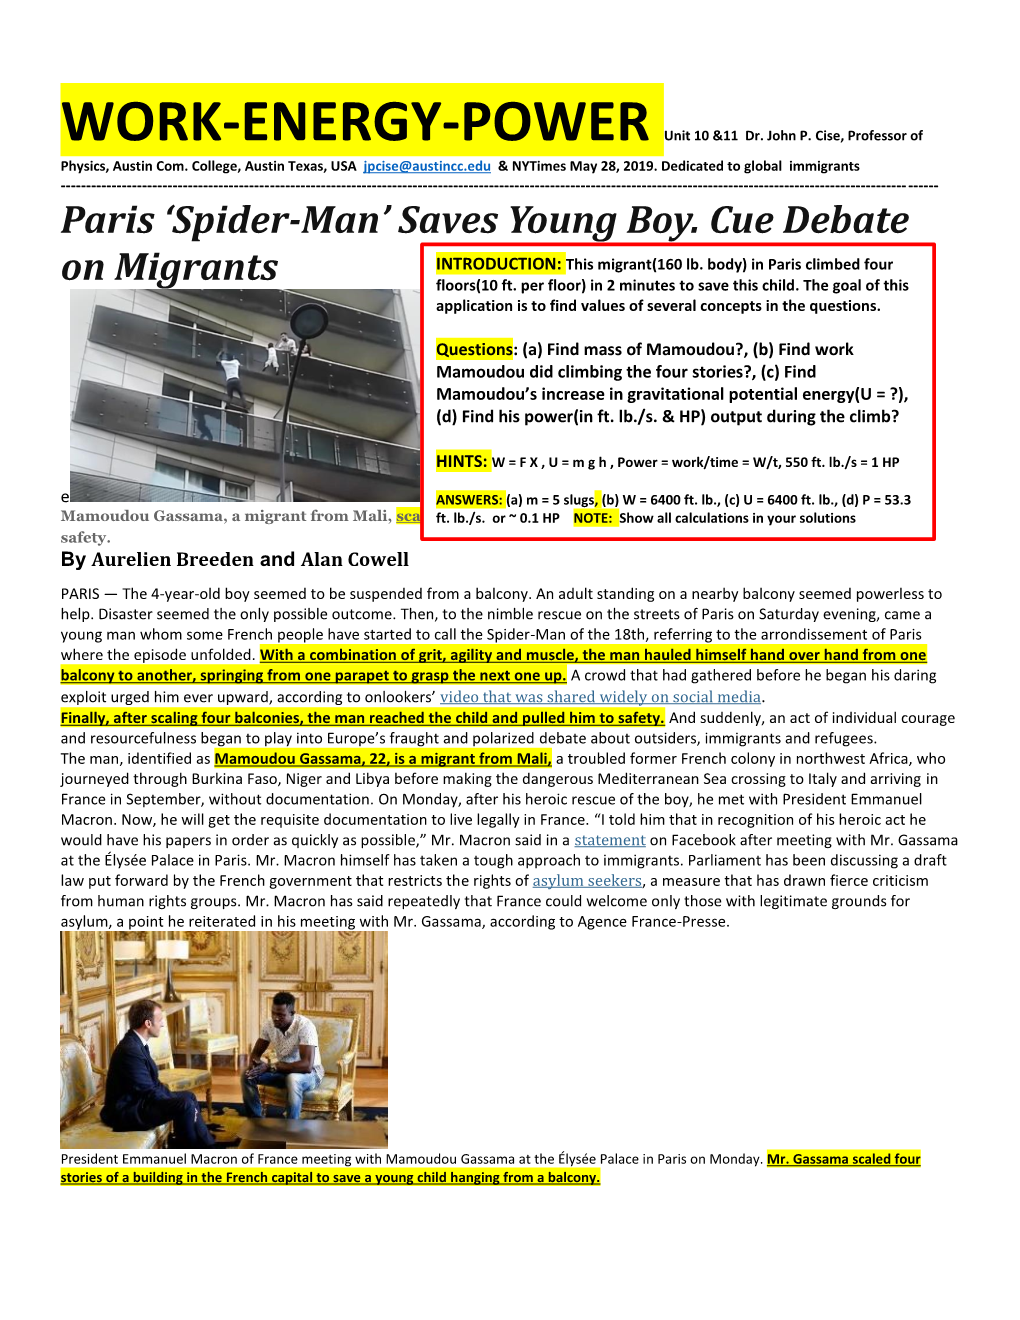 Paris 'Spider-Man' Saves Young Boy. Cue Debate on Migrants